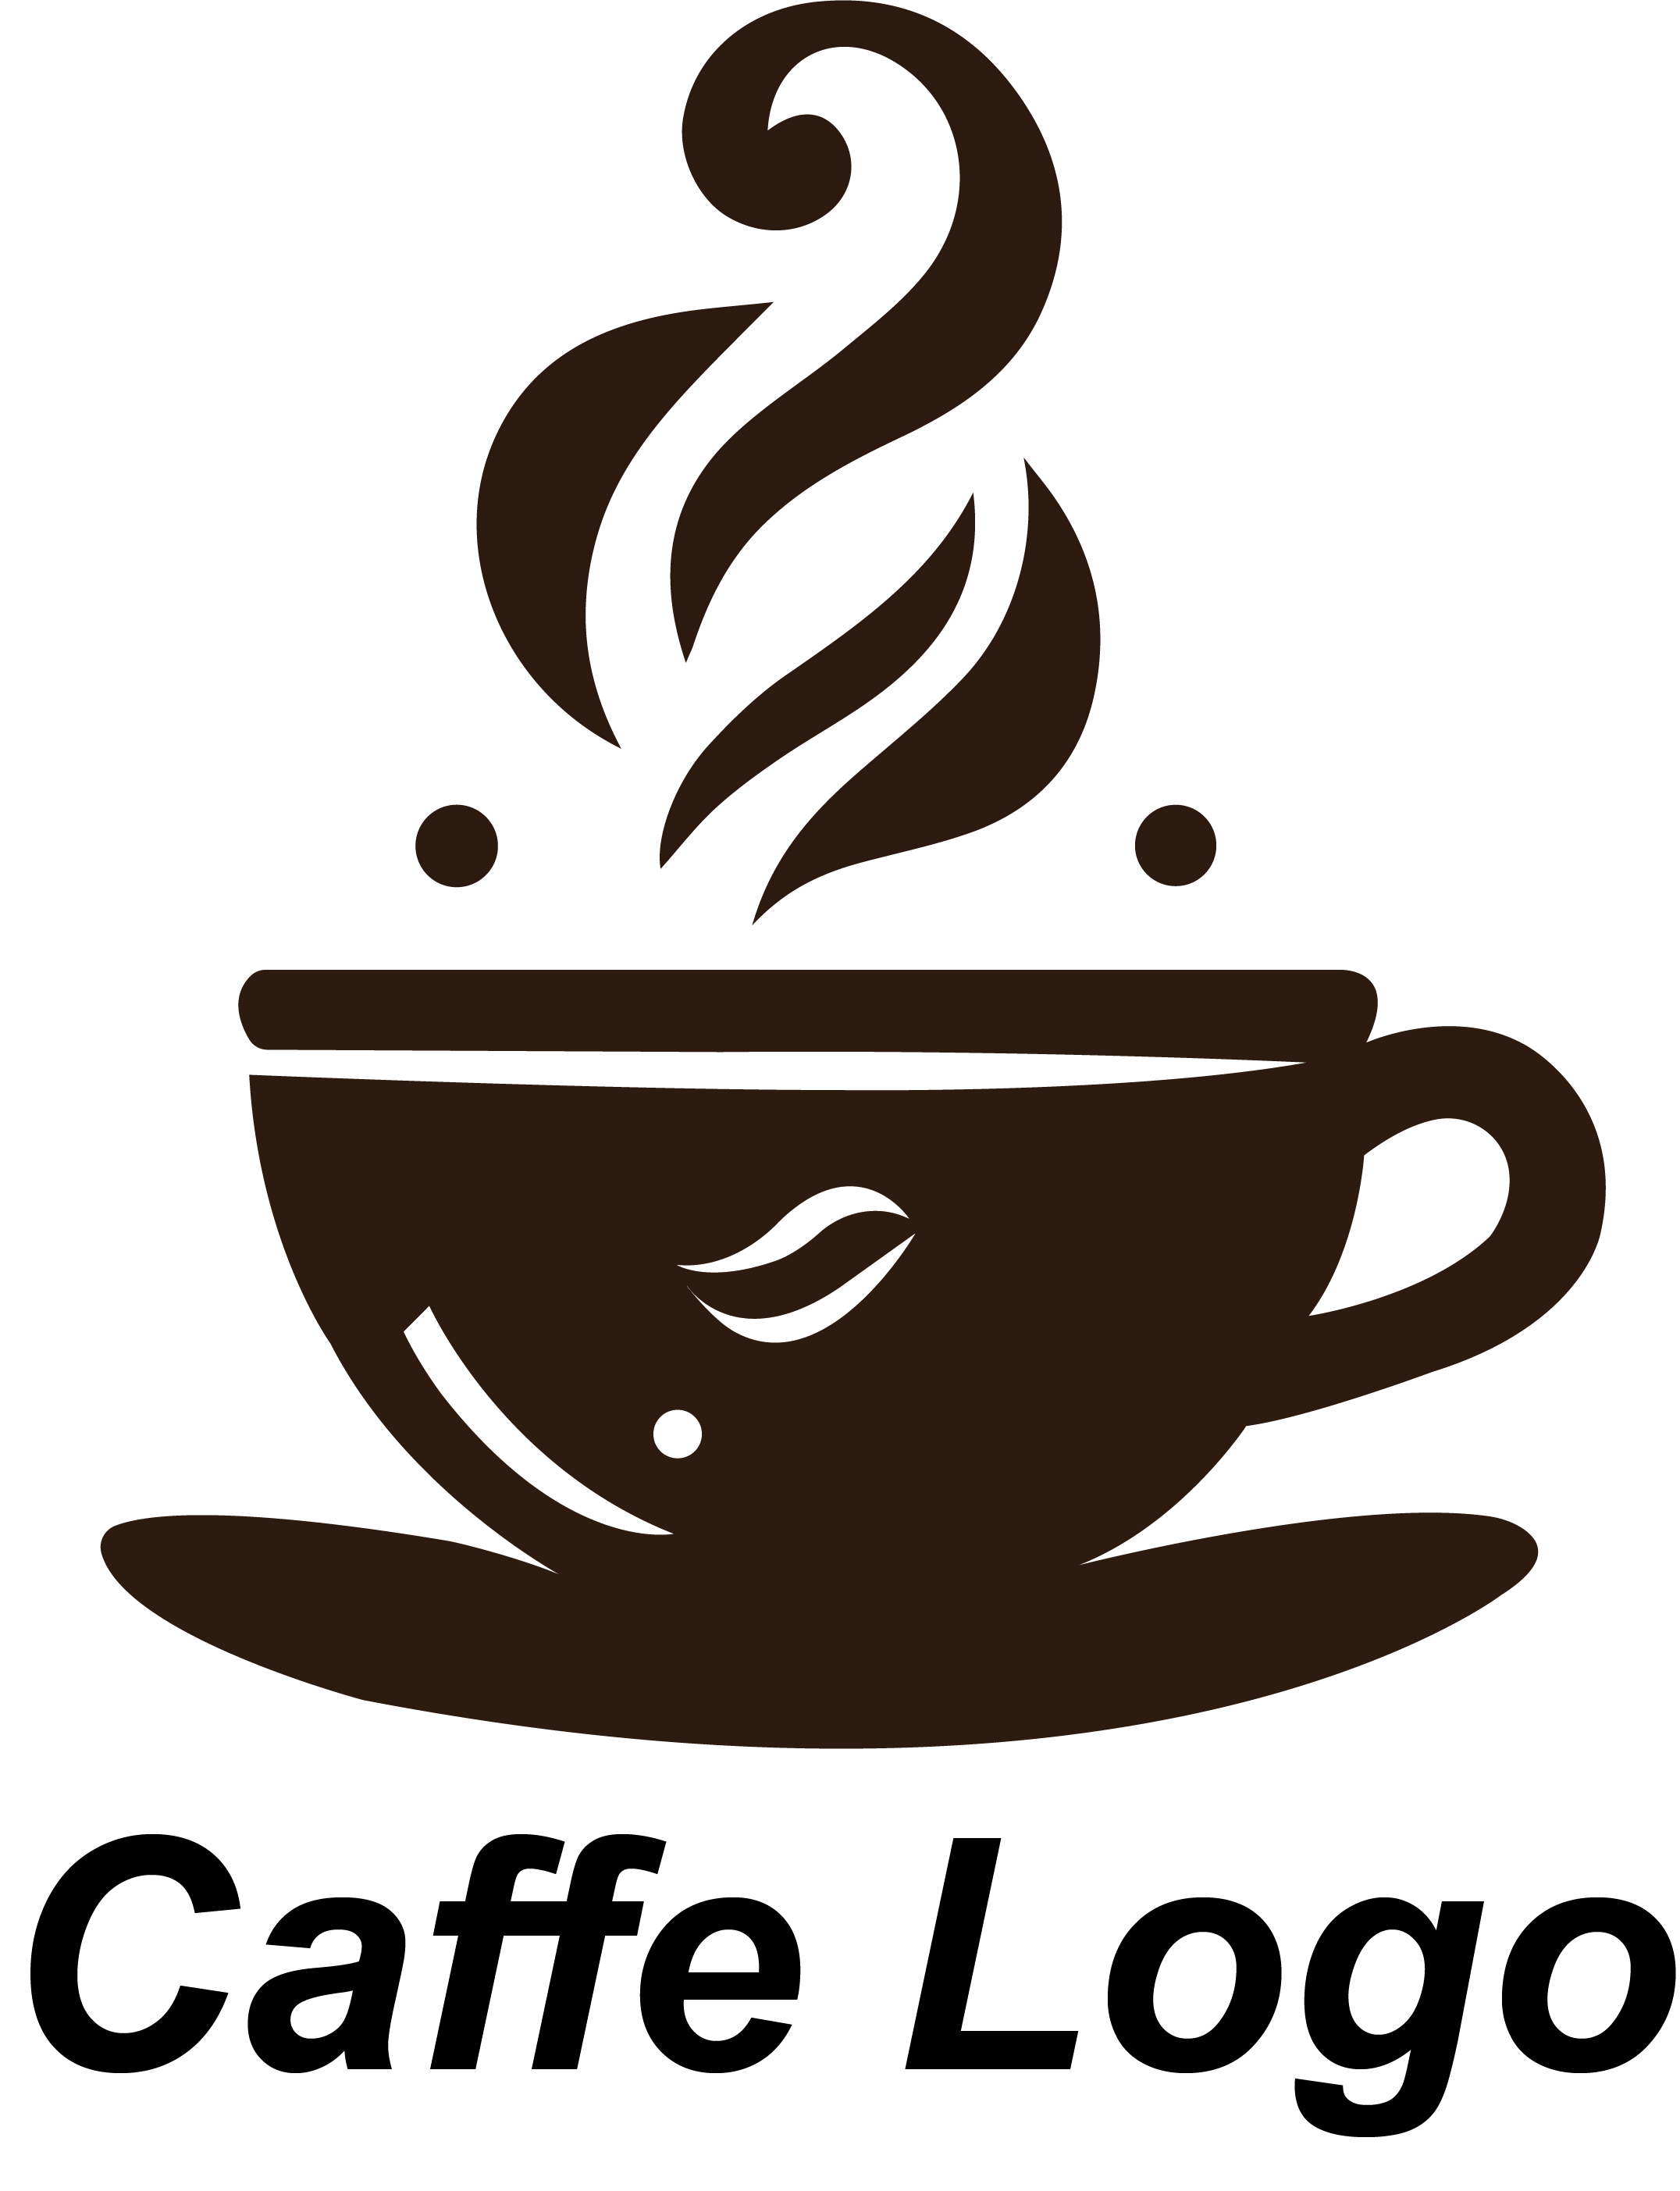 caffe logo 1 915